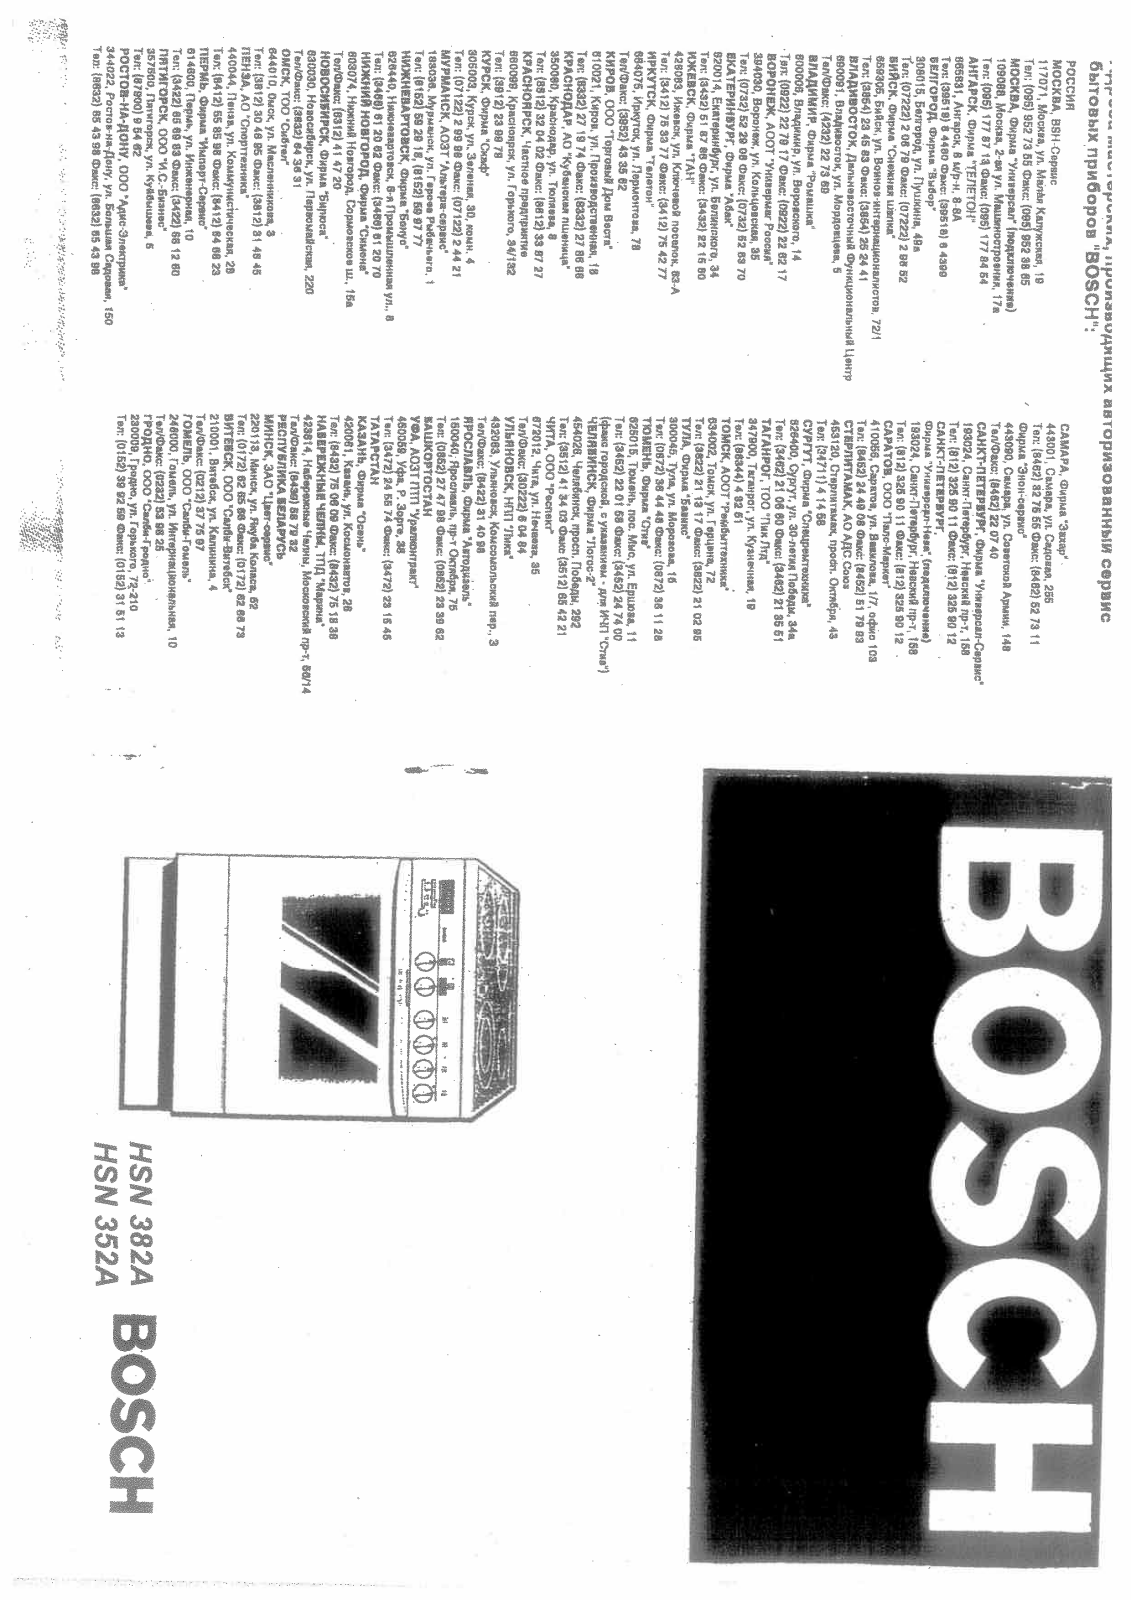 BOSCH HSN352A, HSN382A User Manual